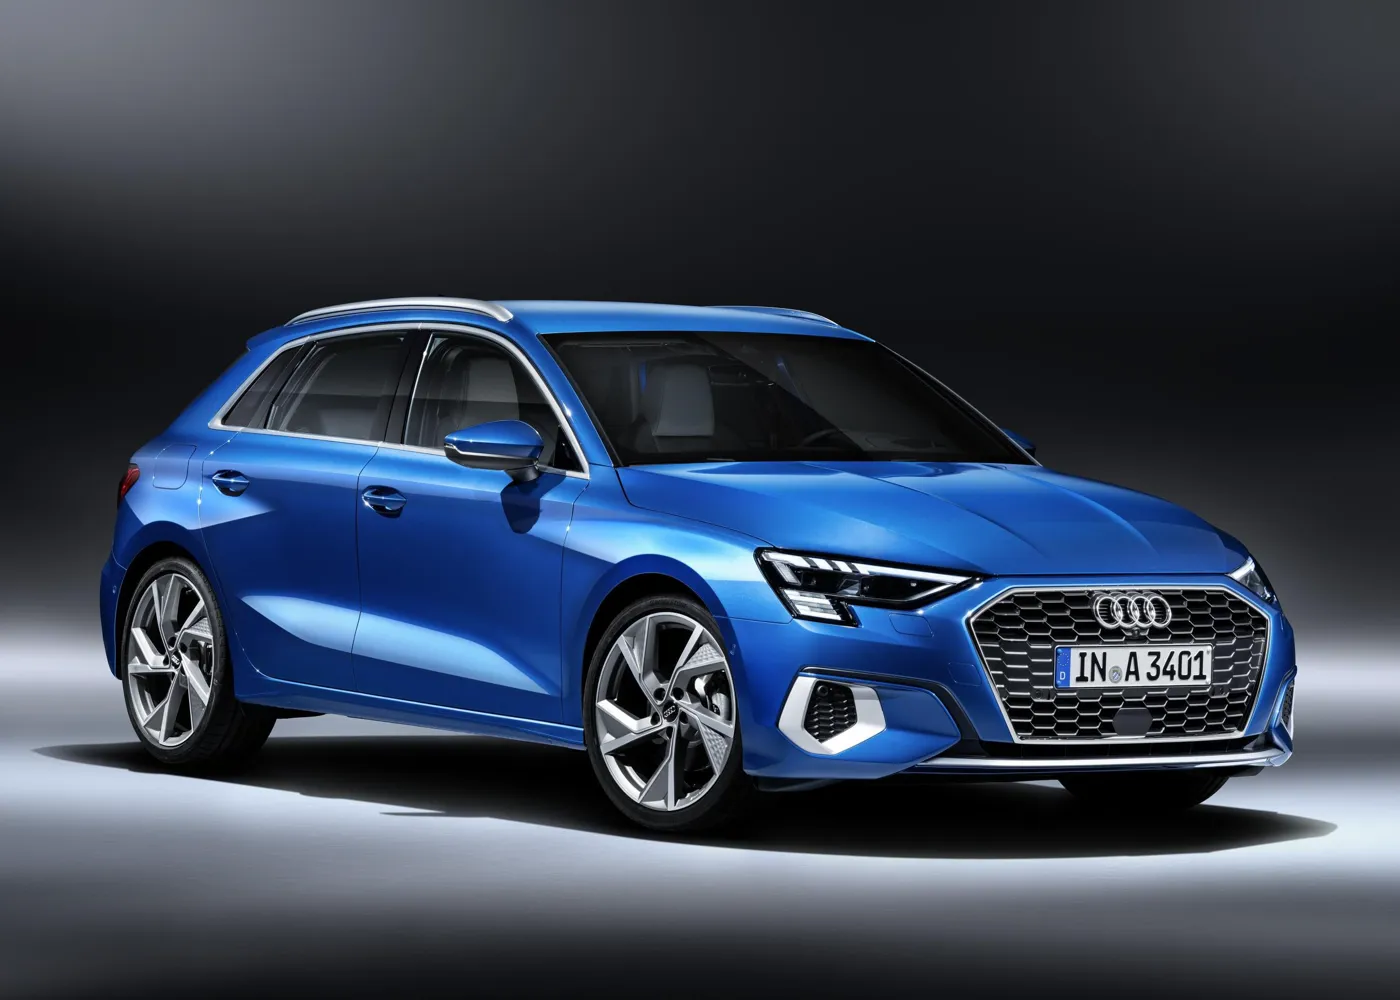 New Audi A3 revealed